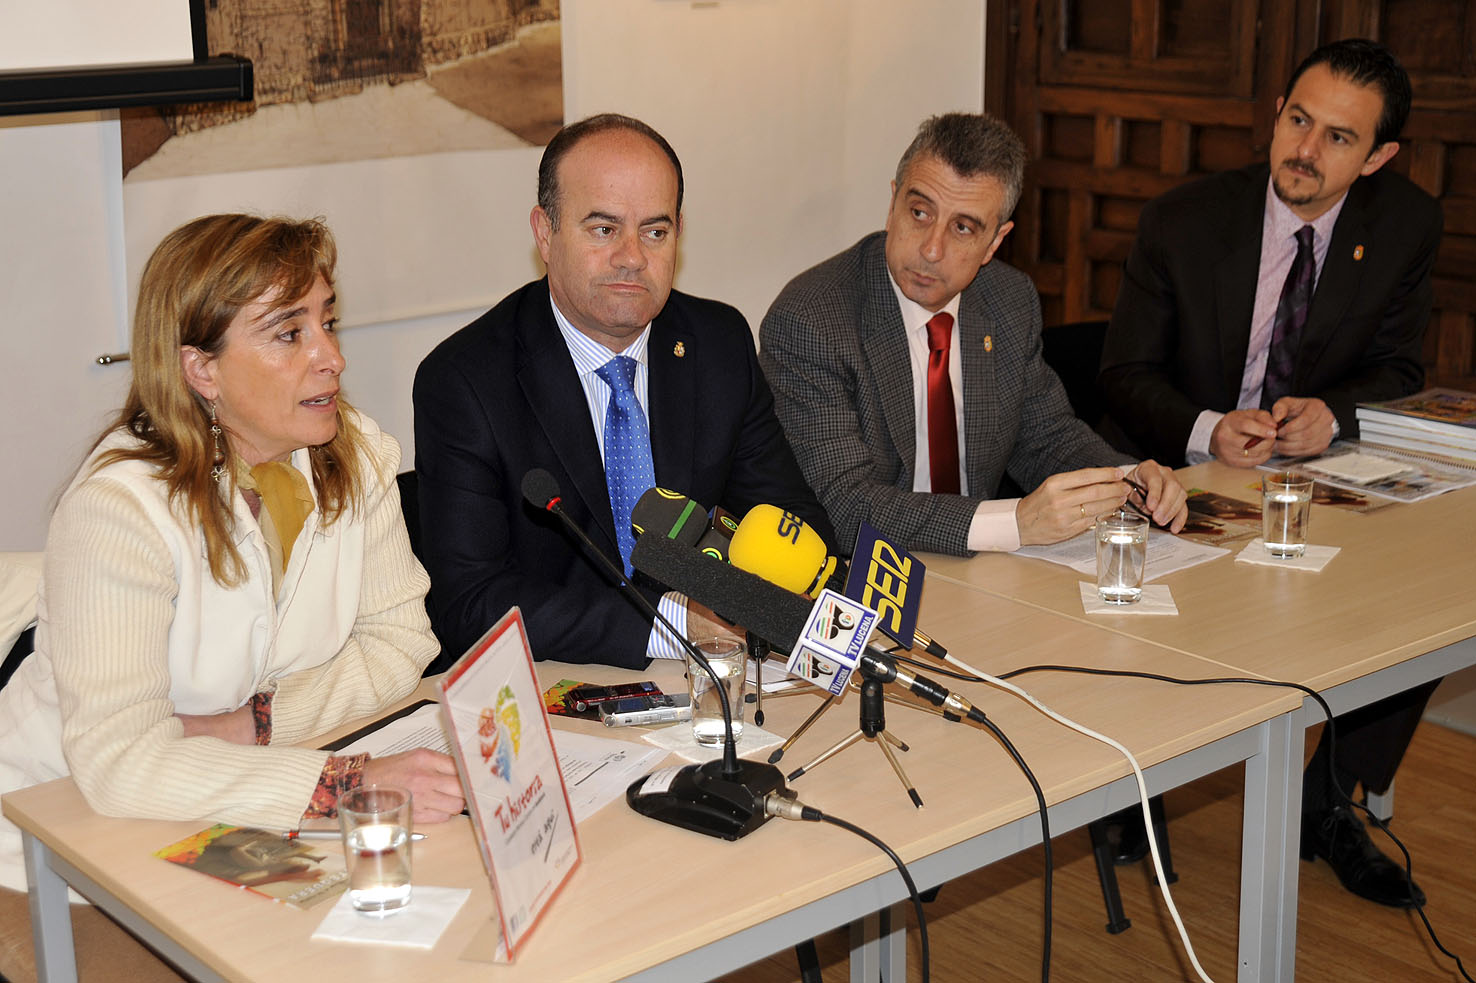 La teniente de alcalde Belén Jiménez expuso los productos y peculiaridades más importantes de nuestra ciudad como destino turístic...